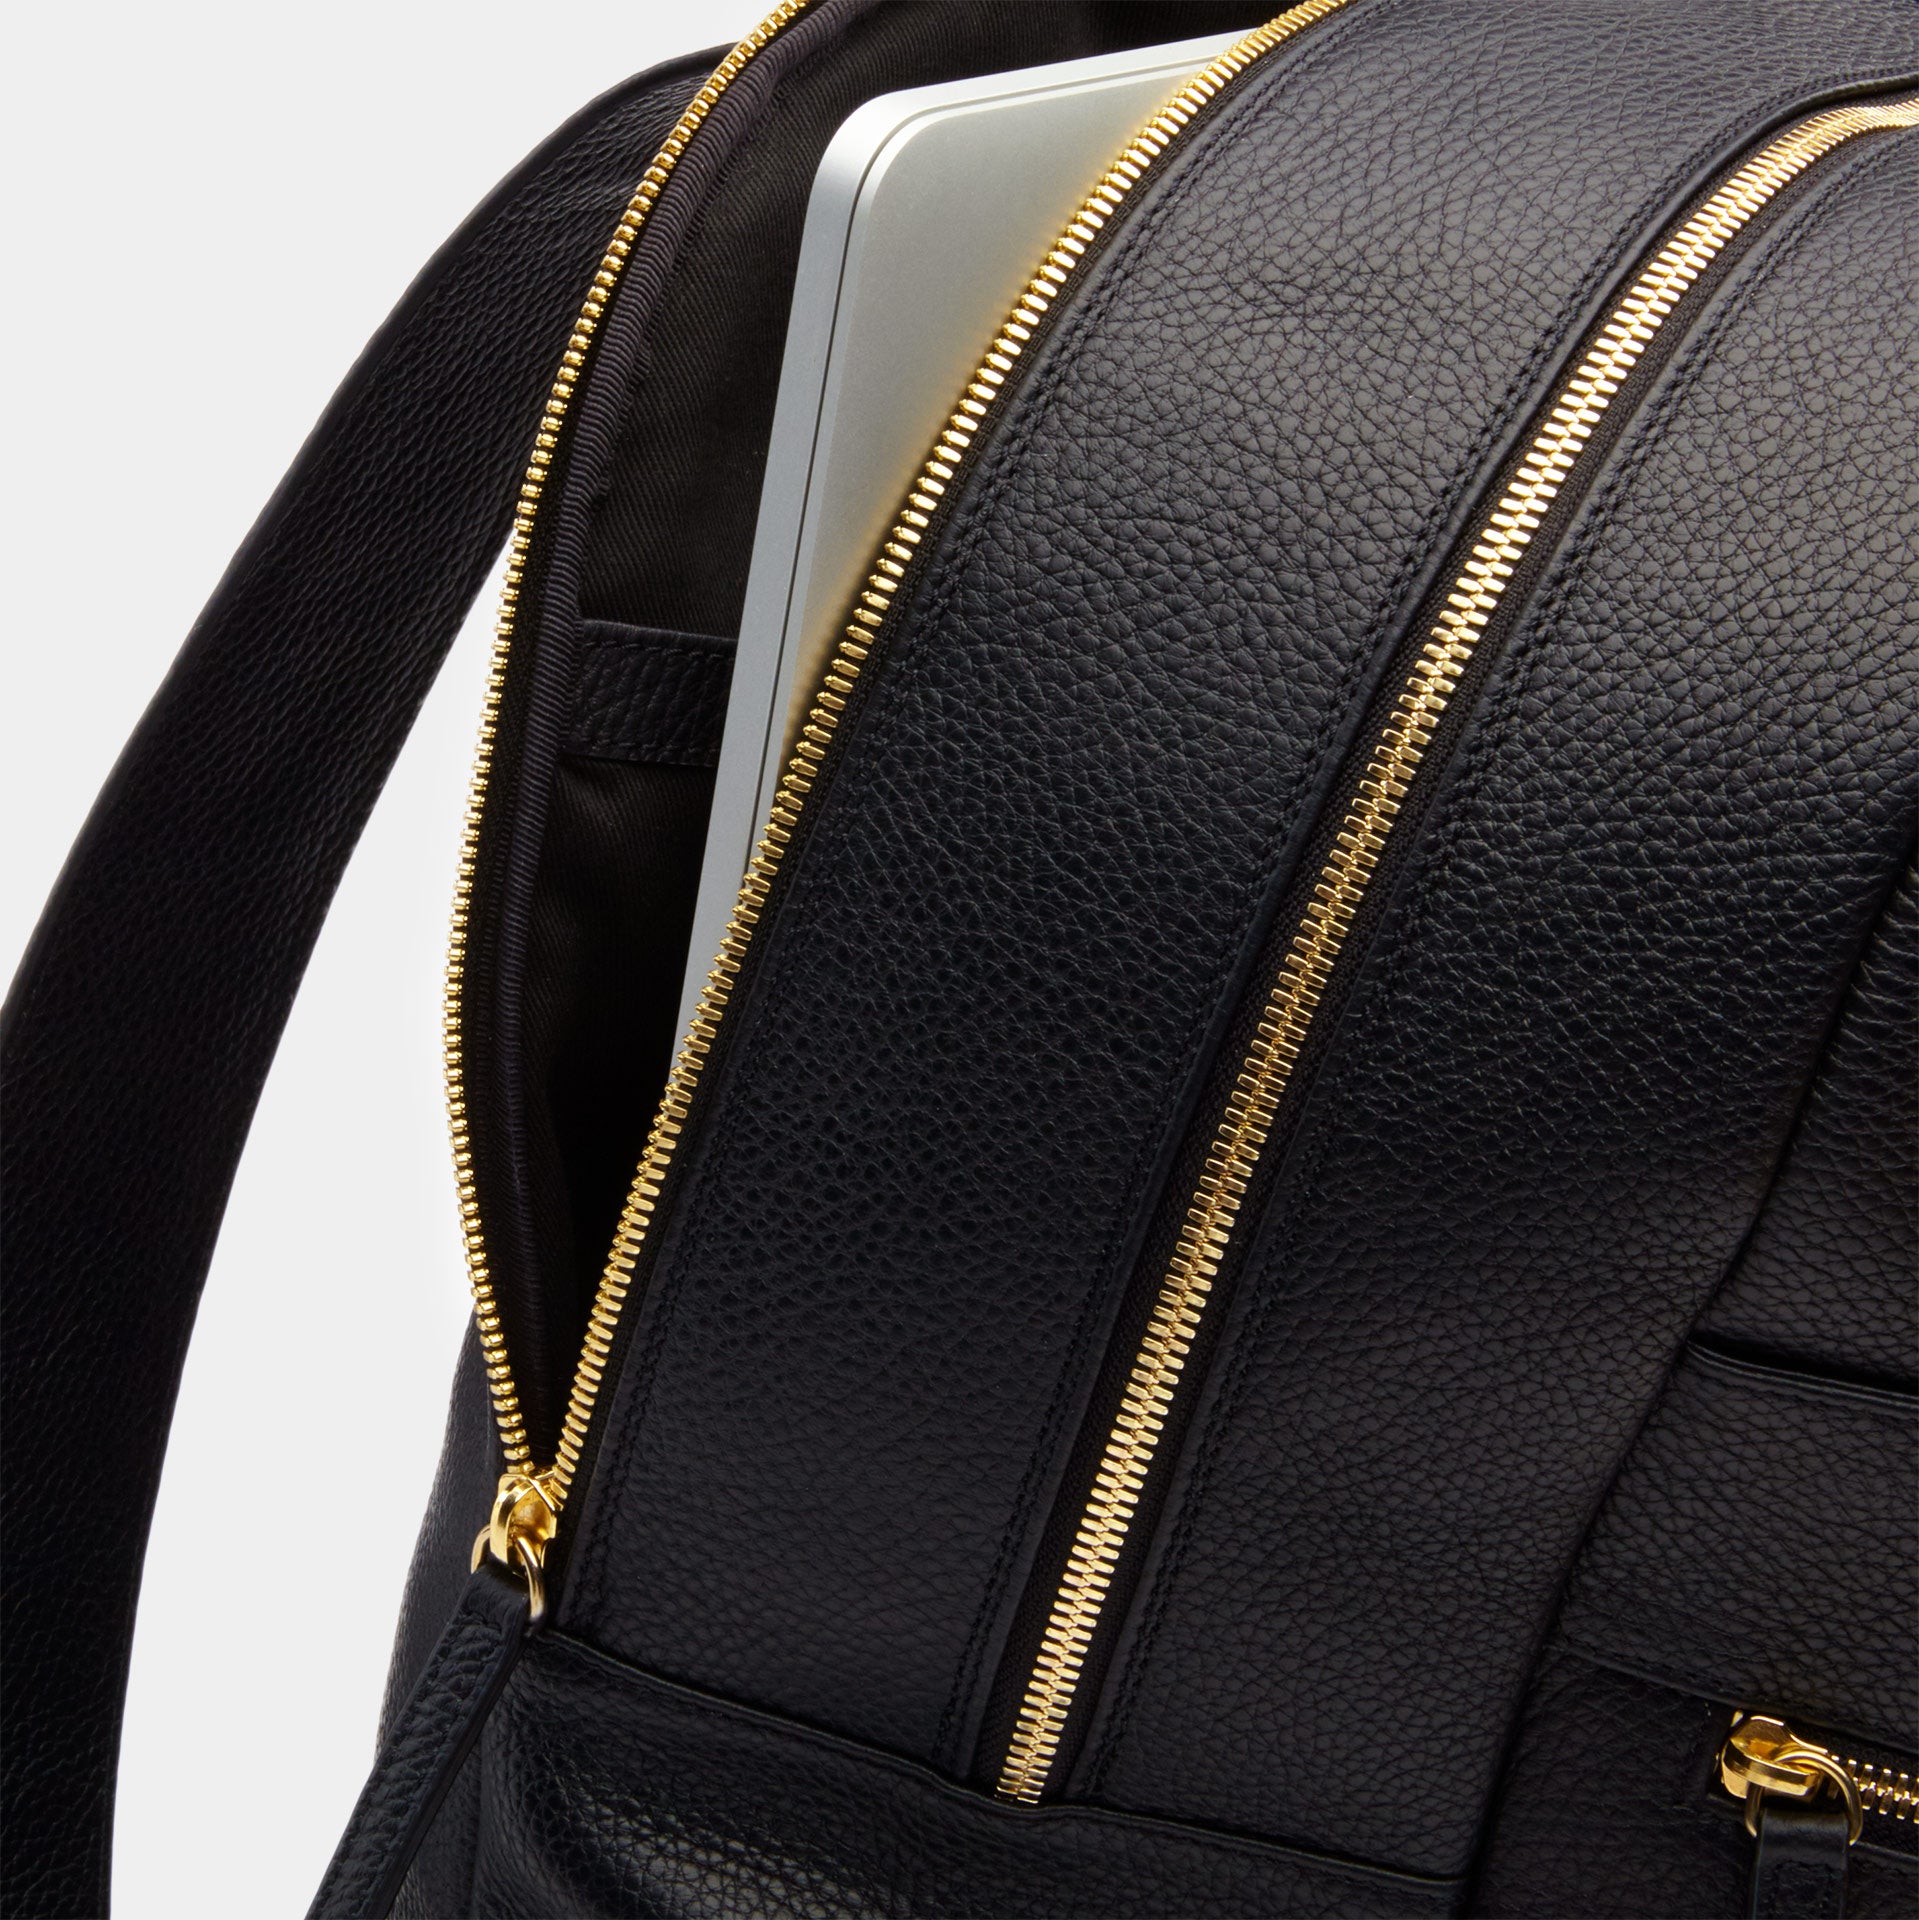 Brooklyn Italian Leather Backpack in Black – ectu